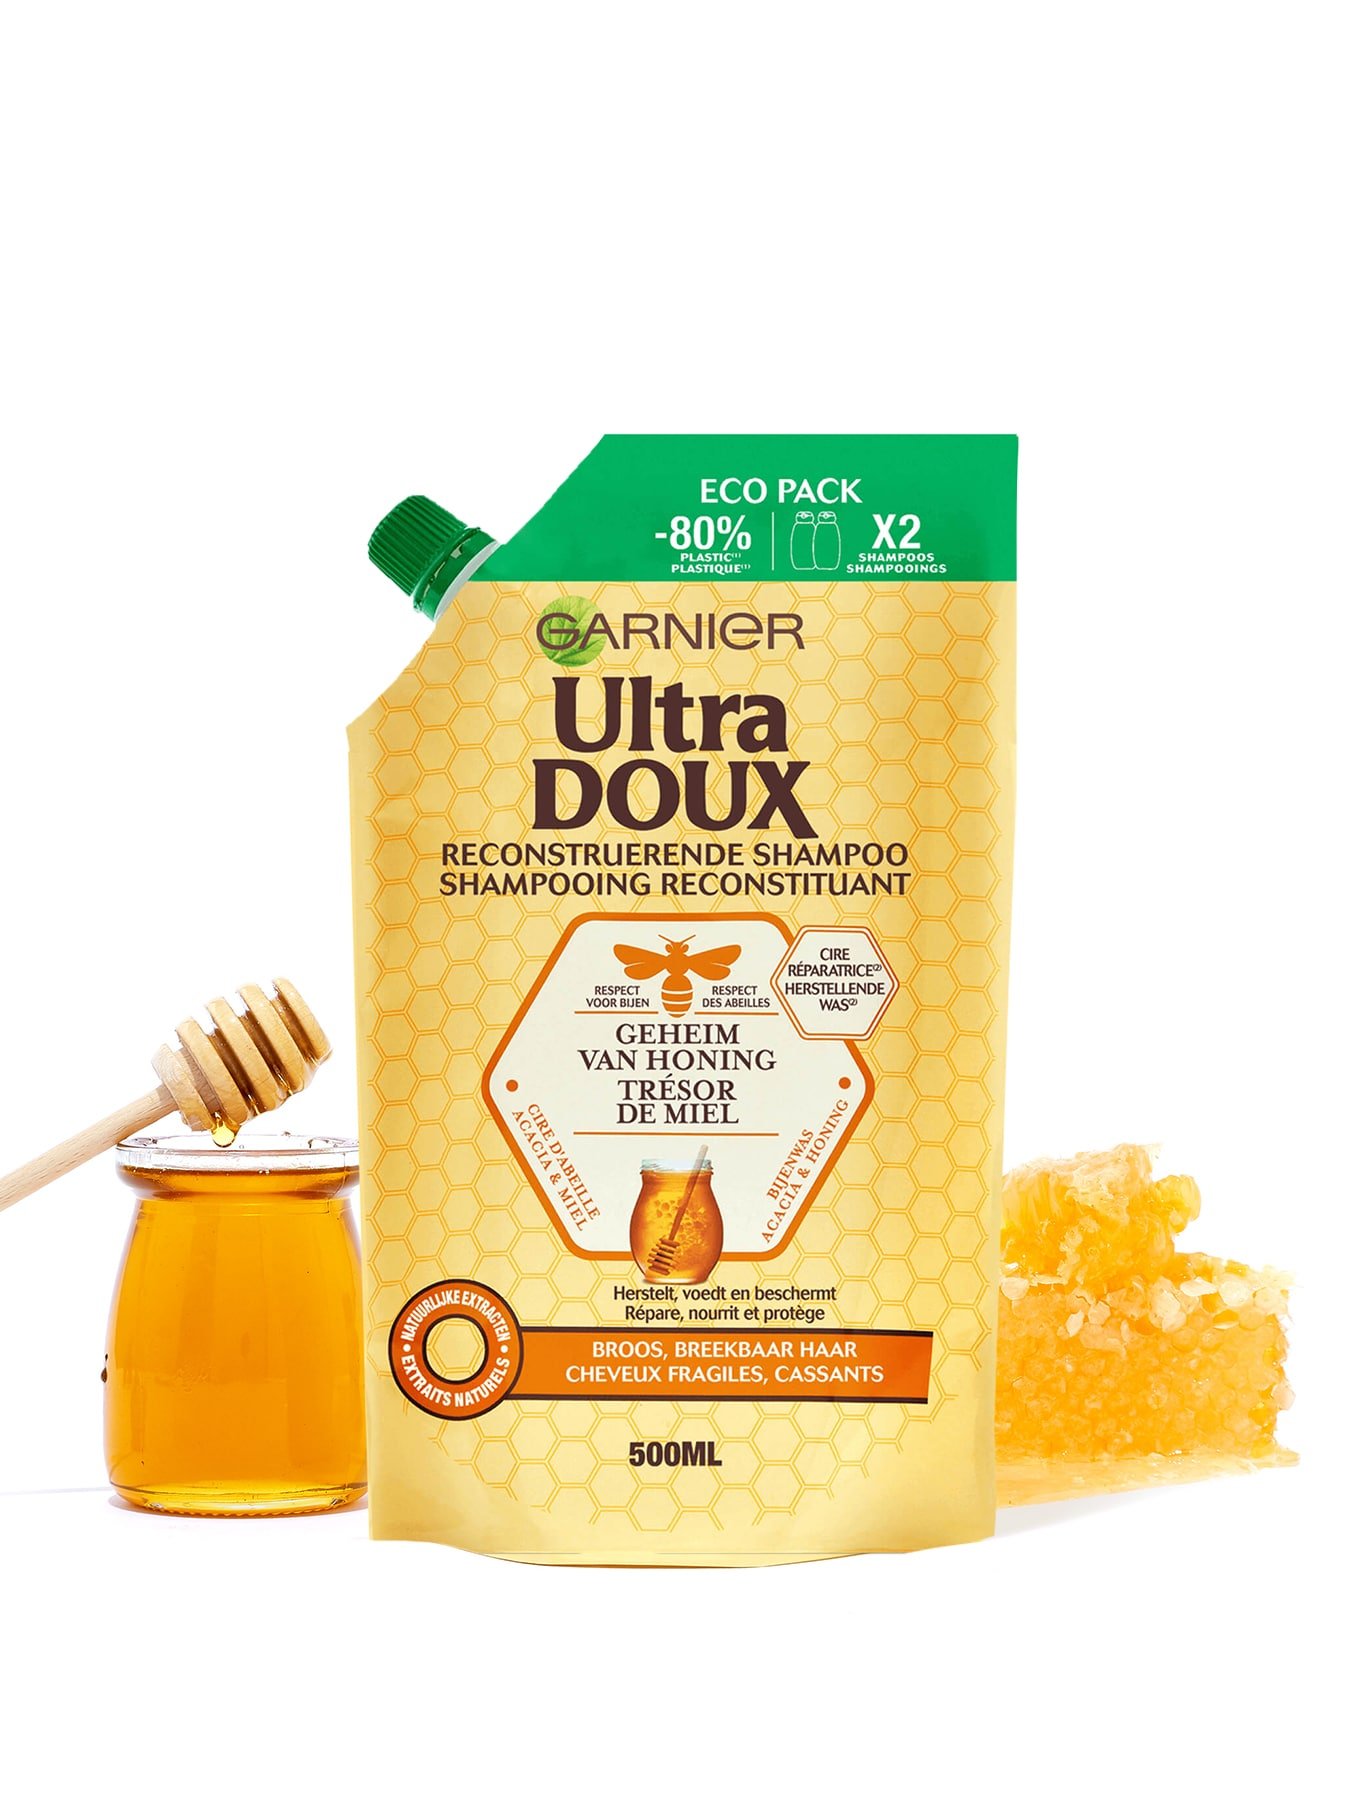 UD Eco Pack Honey Treasures Ingredients